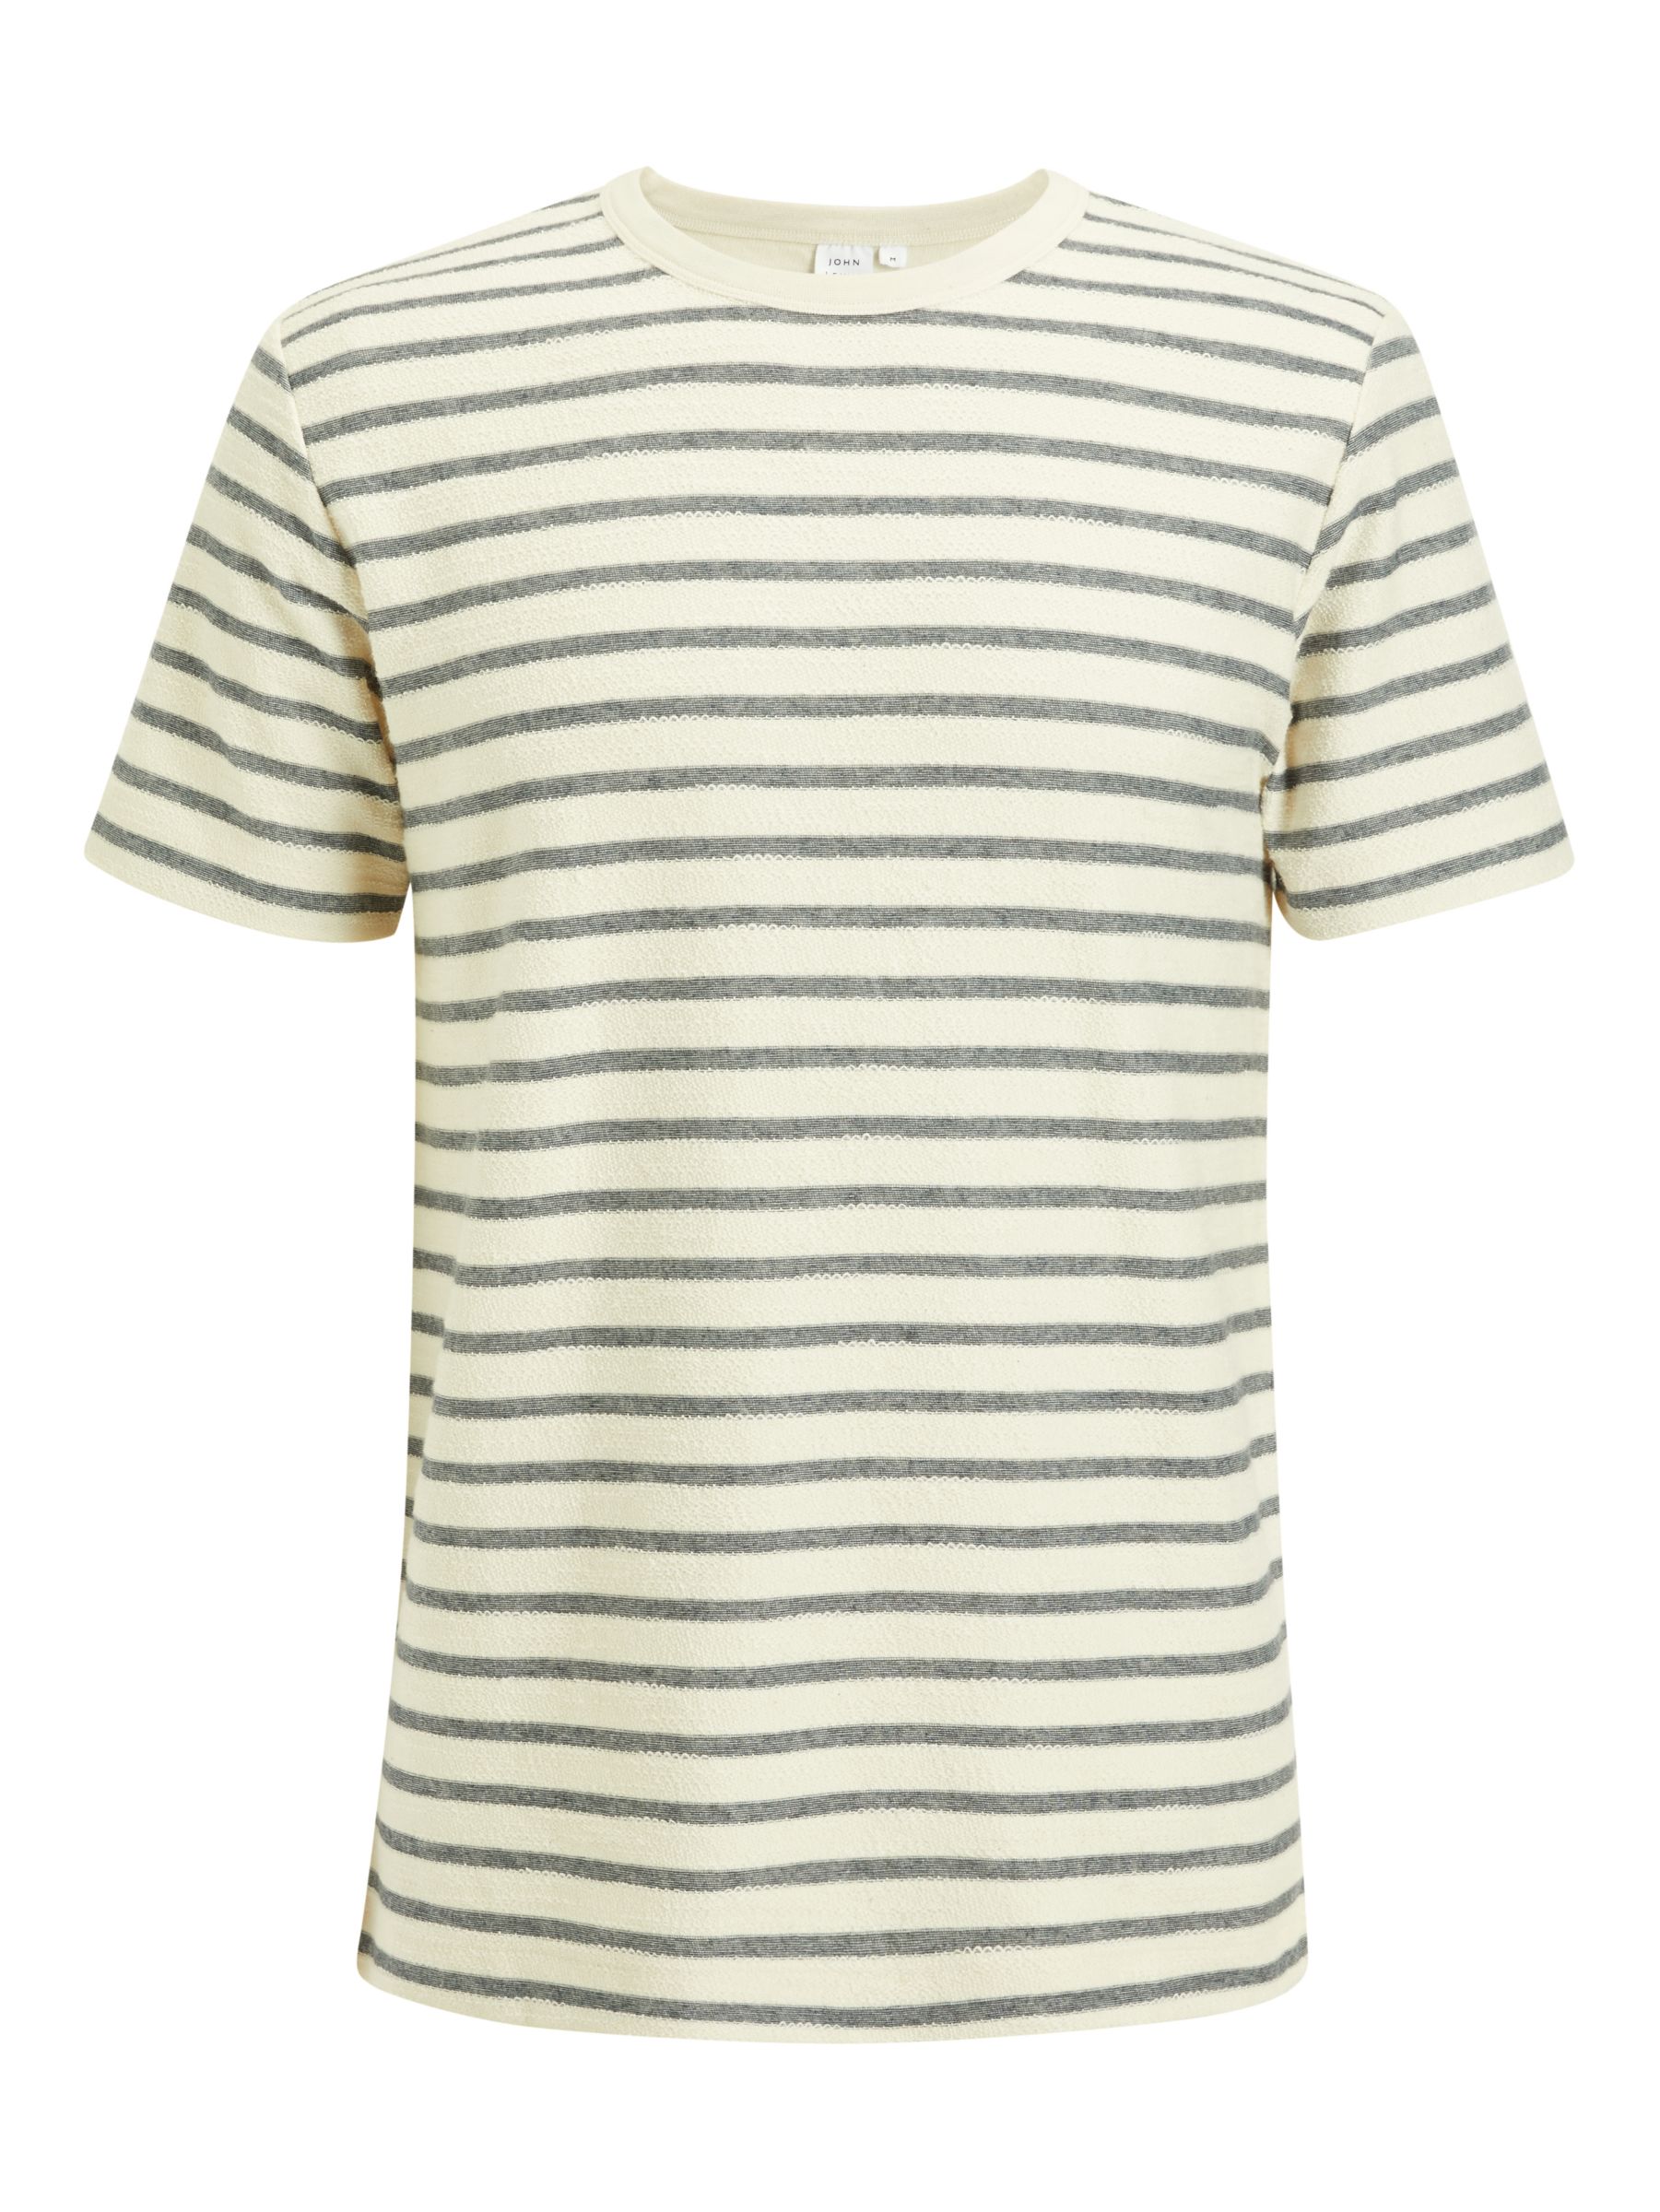 John Lewis & Partners Loop Front Stripe T-Shirt, Ecru/Navy at John ...